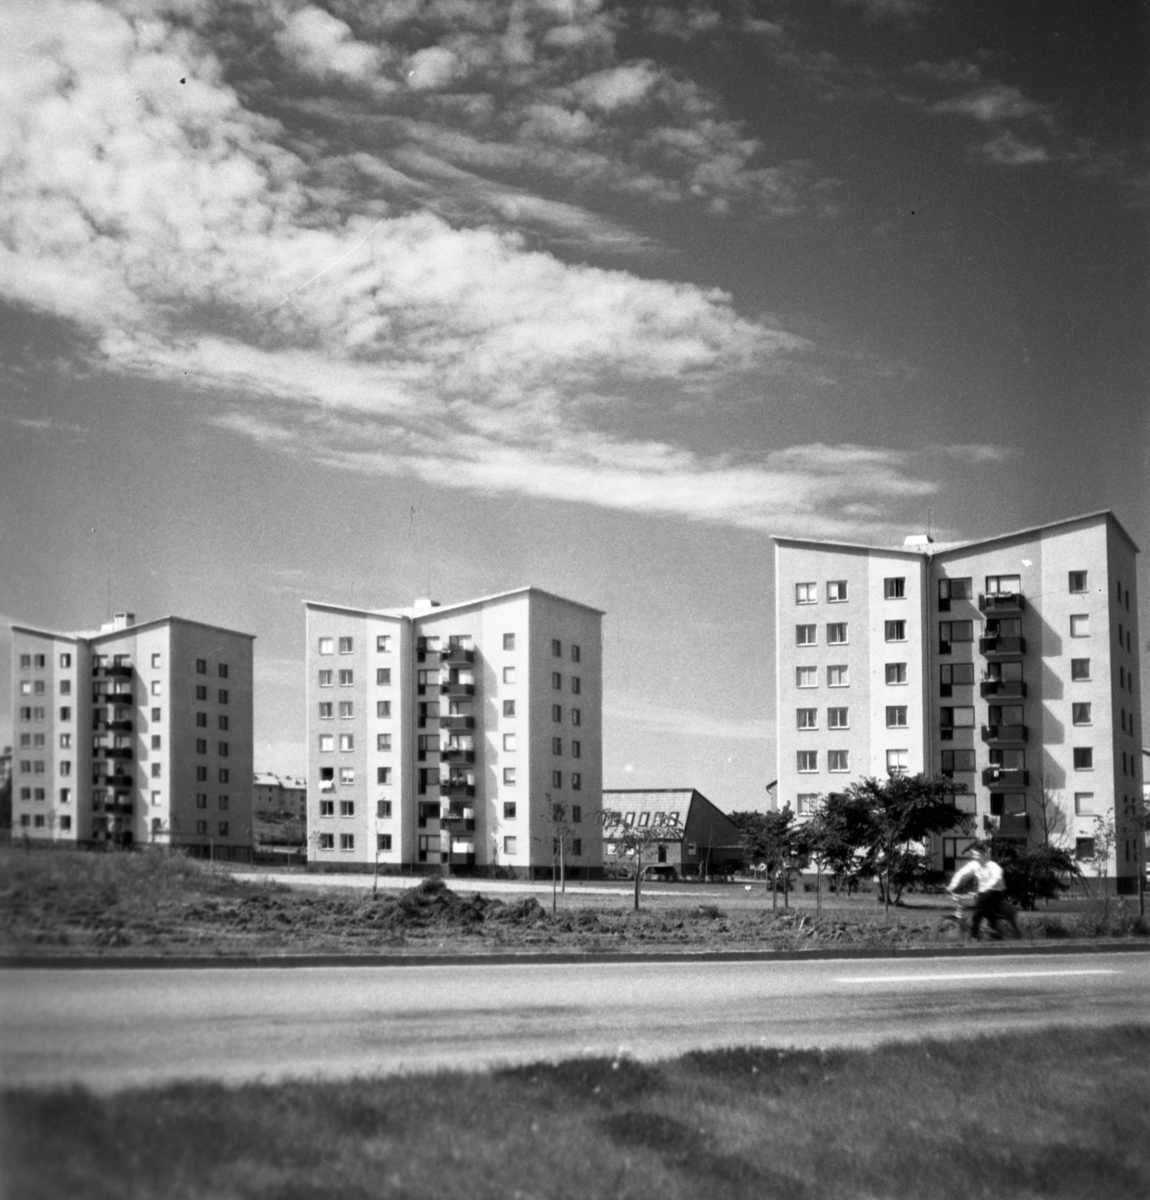 Höghusen i Åbylund år 1960. Sett från Bergsvägen. Höghus. Lägenheter. Stadsvy. Område.